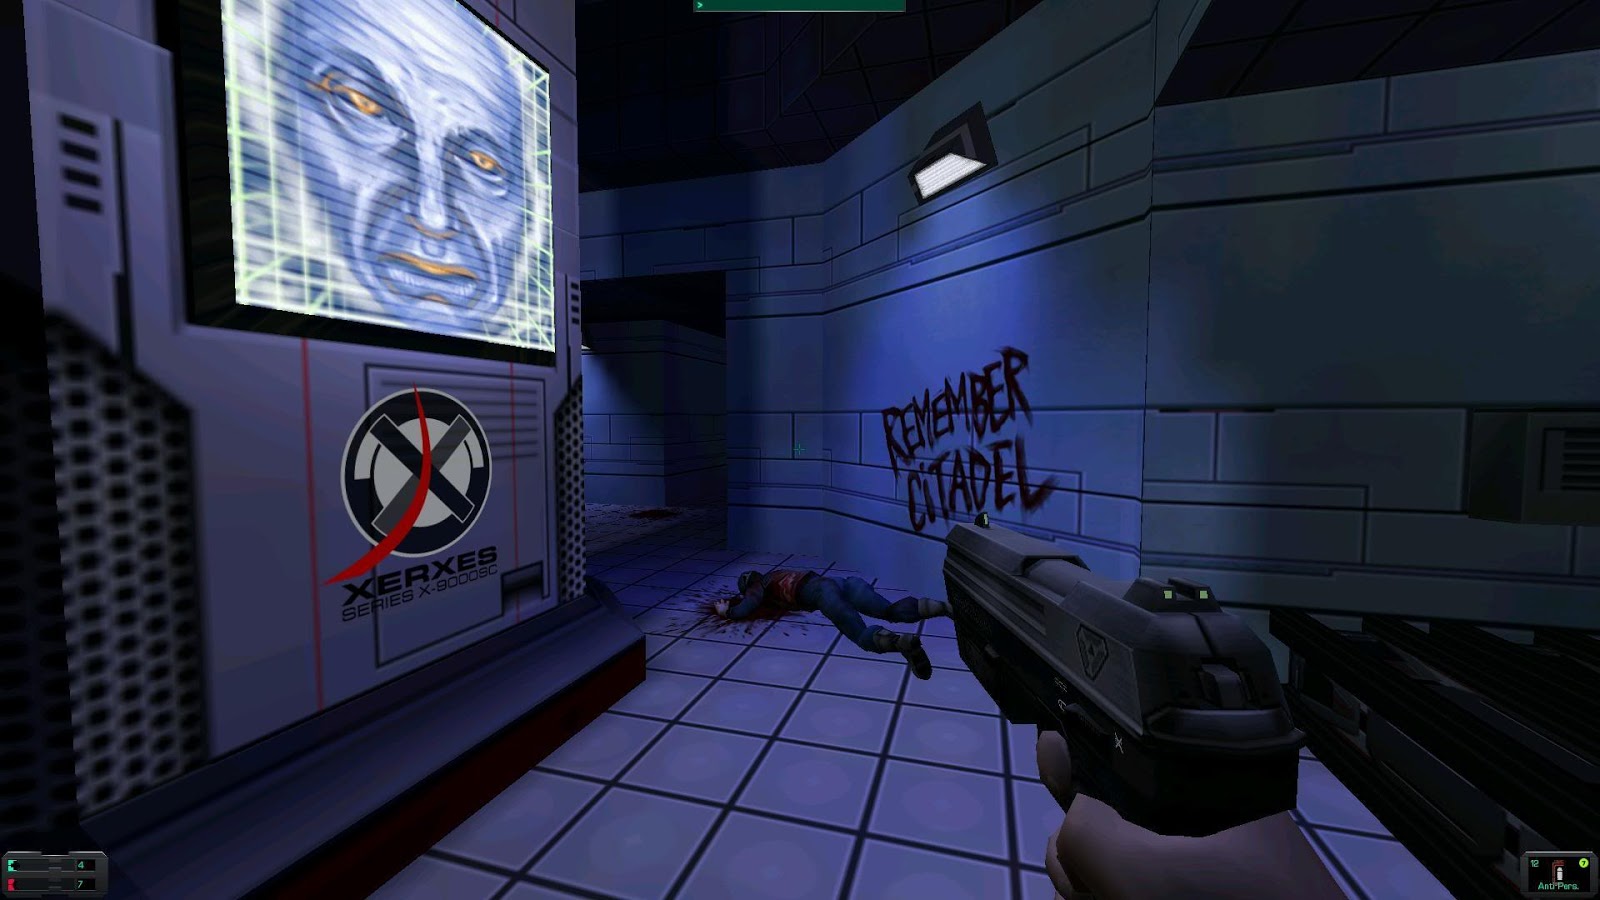 S.T.A.L.K.E.R. 2: Heart of Chornobyl Box Shot for PC - GameFAQs